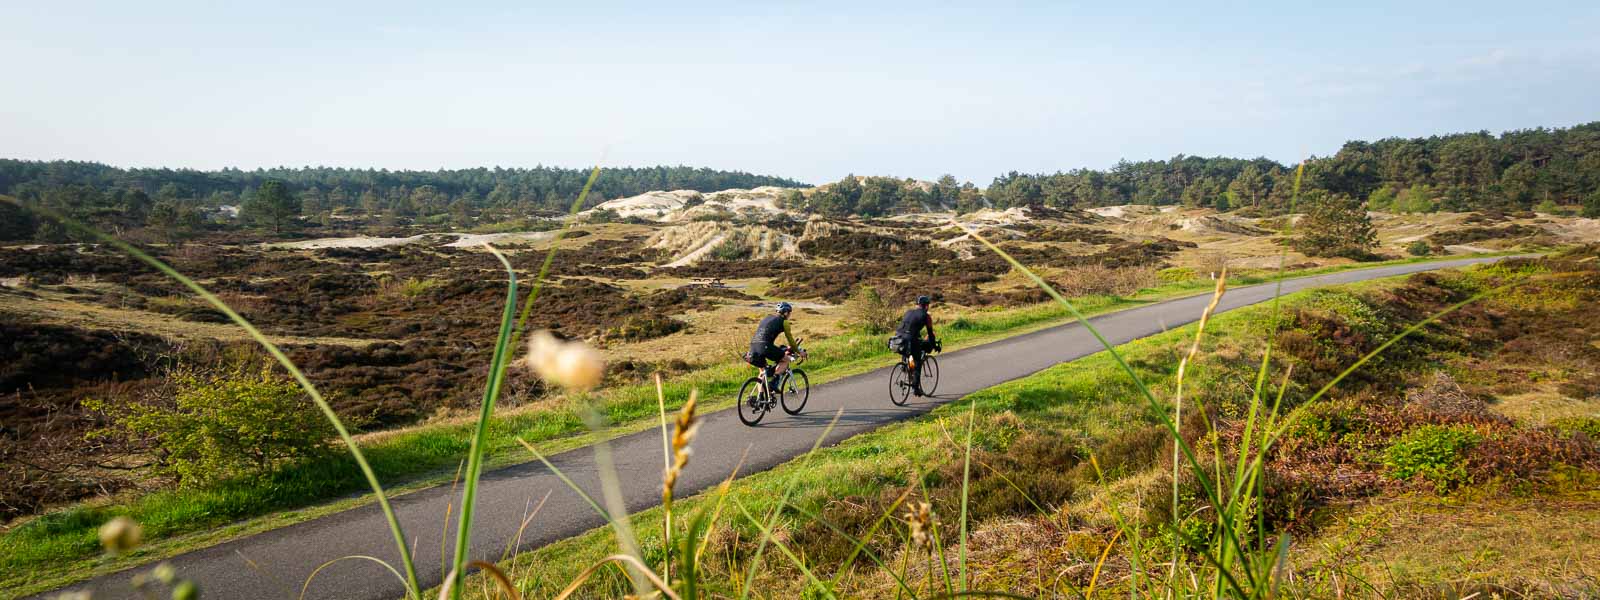 Zwei Radfahrer die am Race around the Netherlands teilnehmen fahren auf einer Straße durch Dünen.